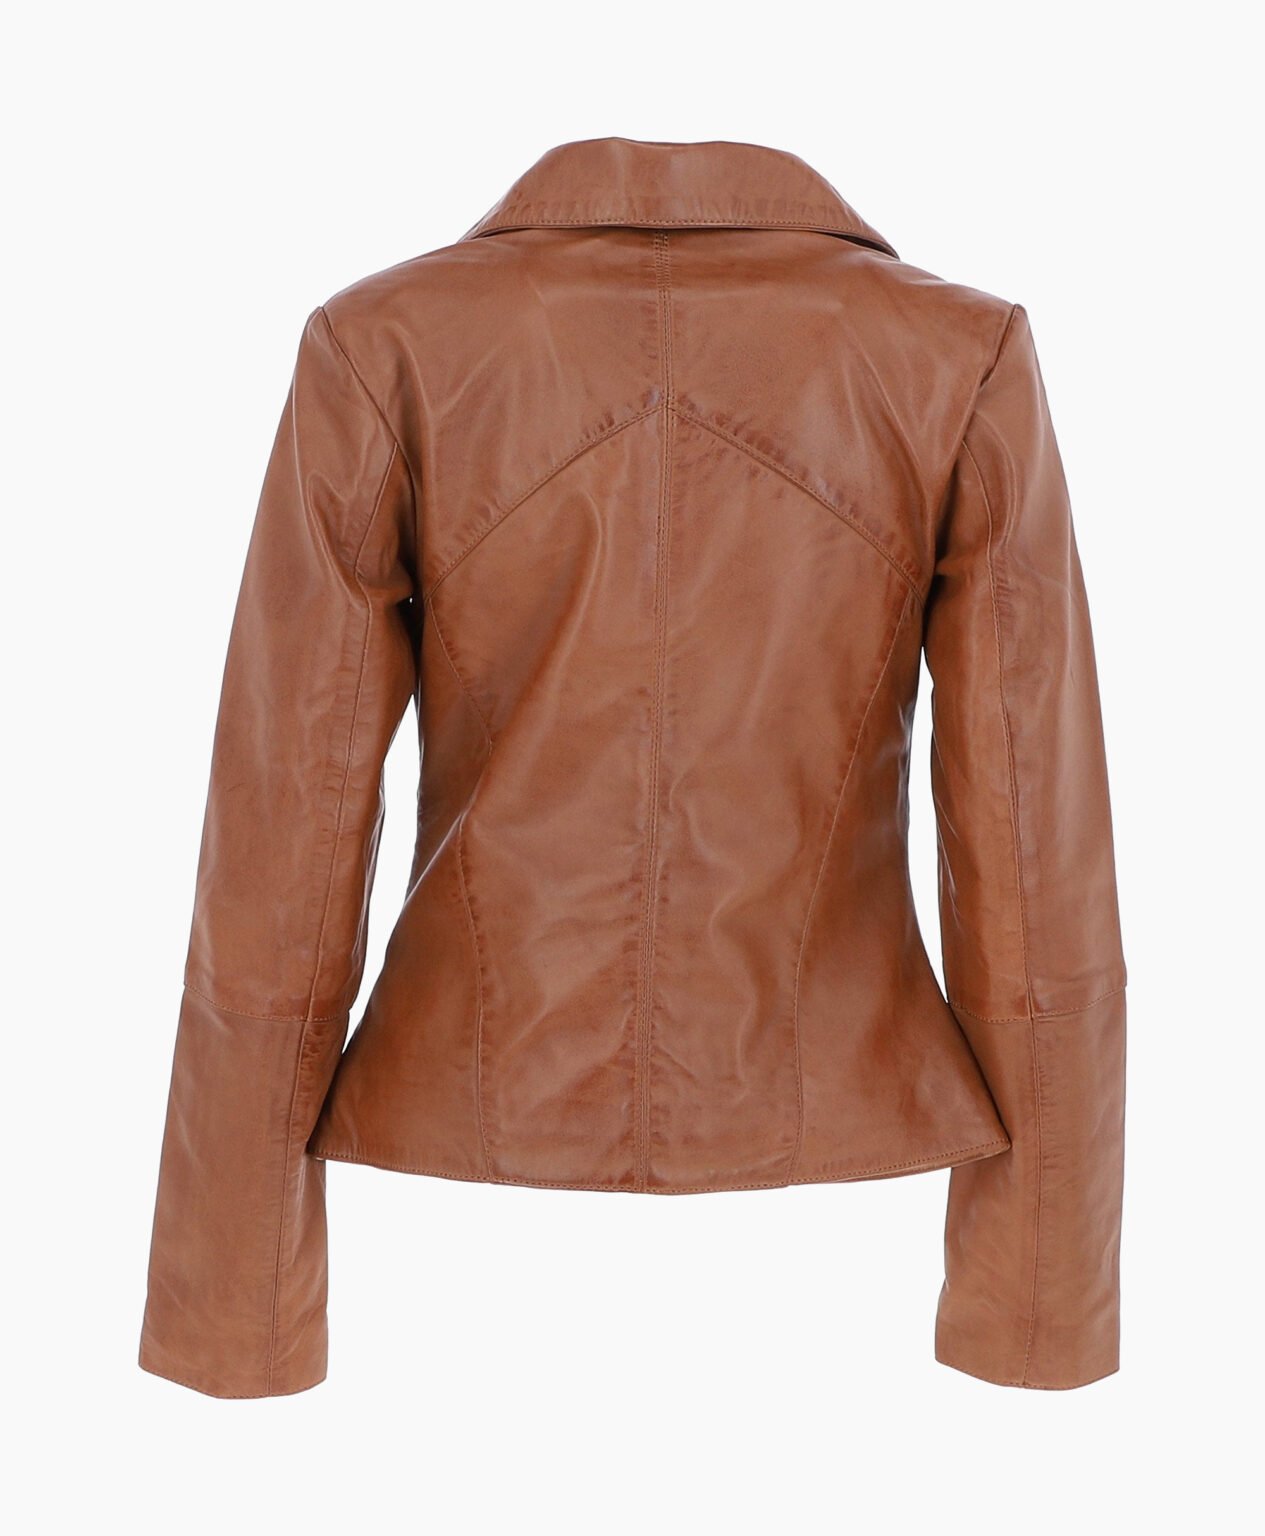 vogue-jacket-leather-biker-jacket-tan-el-dorado-image202